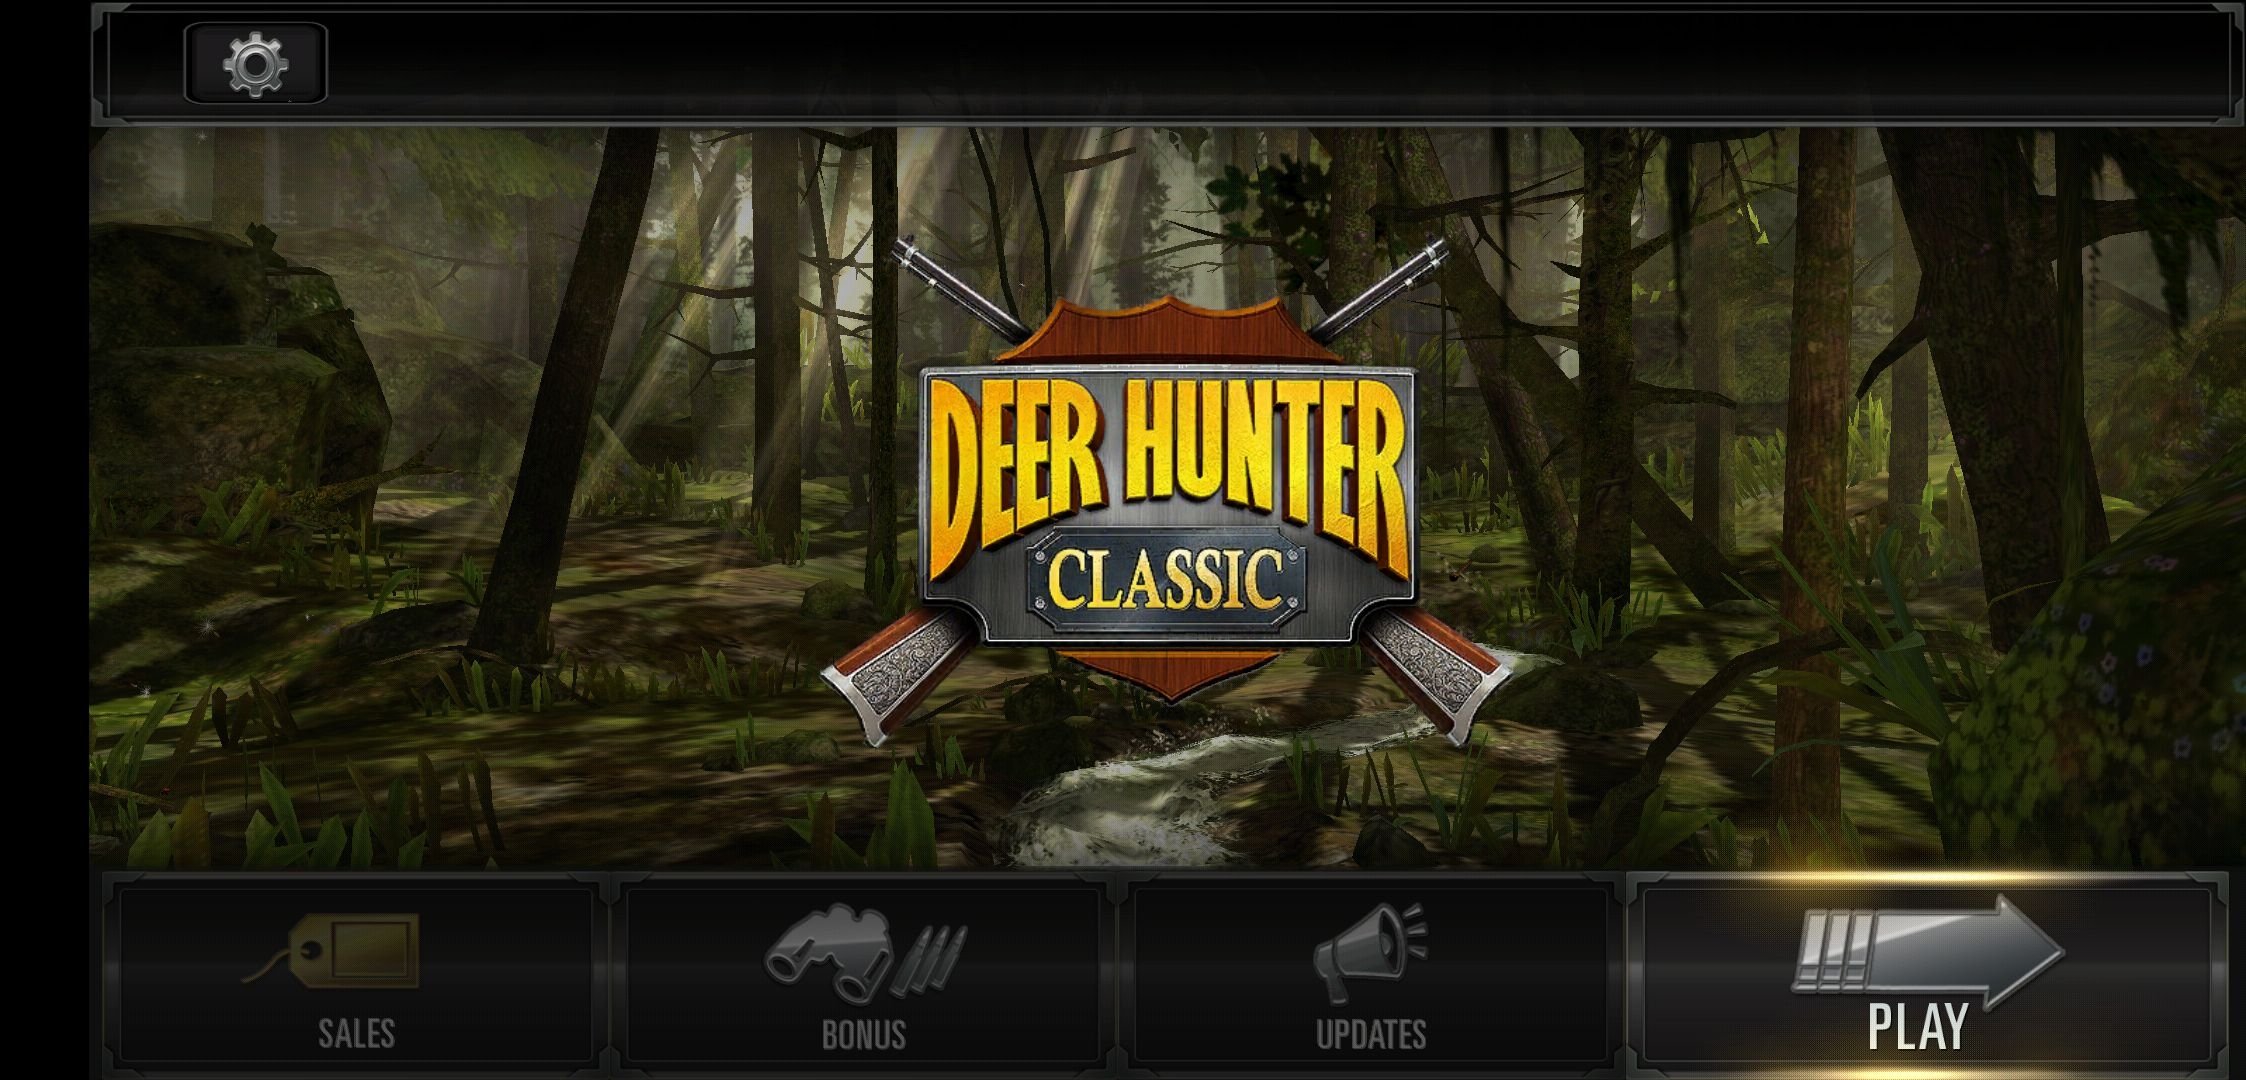 Deer Hunter Classic 3 14 0 Android用ダウンロードapk無料